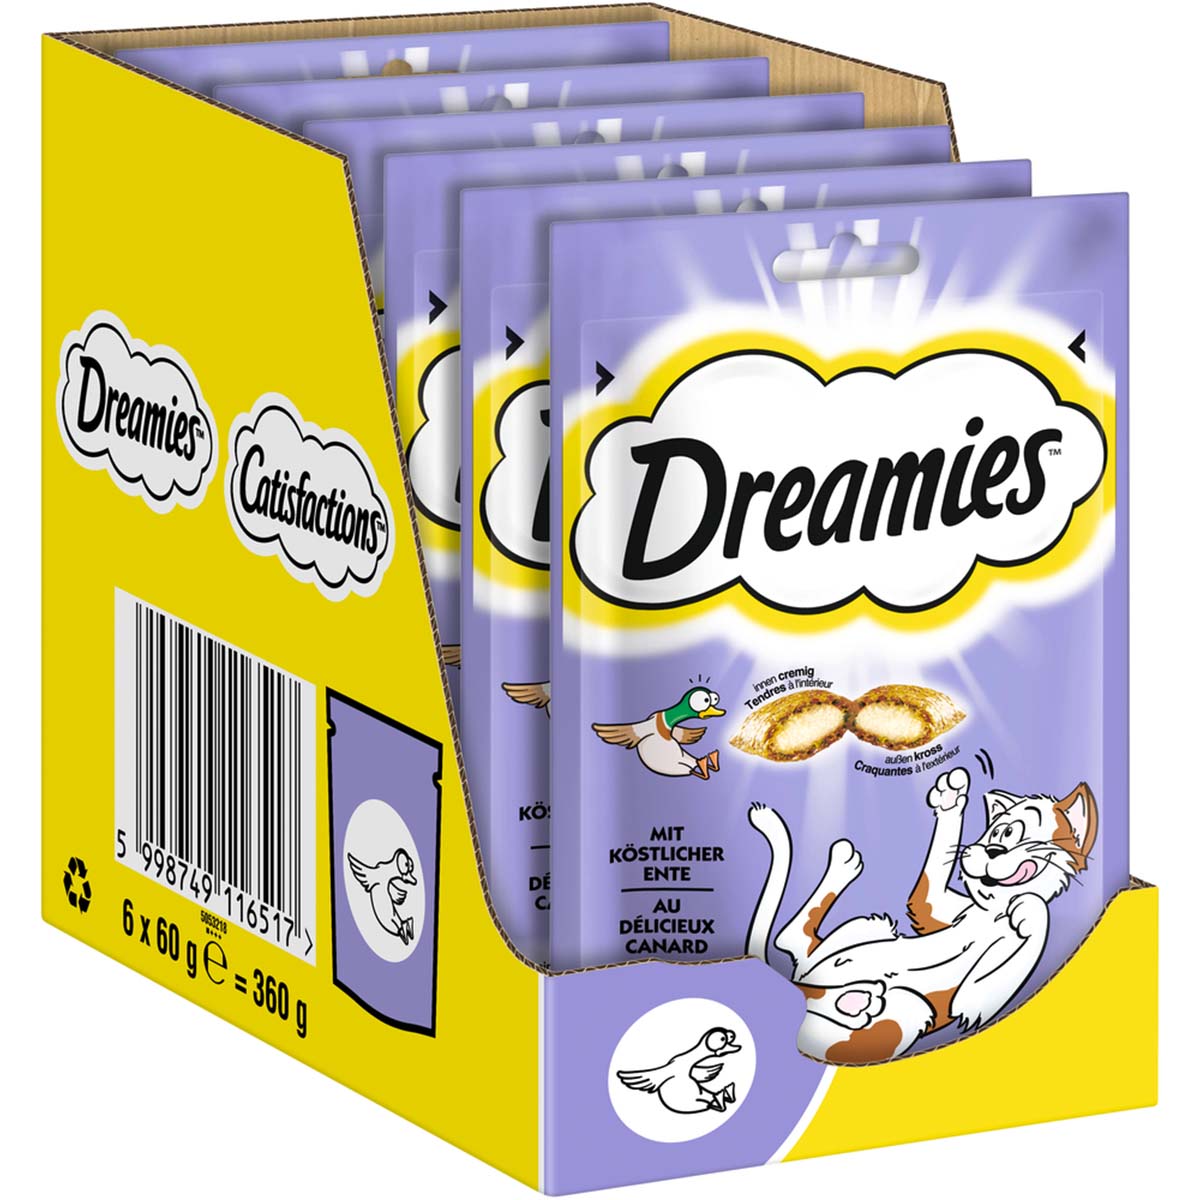 Dreamies Katzensnack mit Ente 6x60g von Dreamies